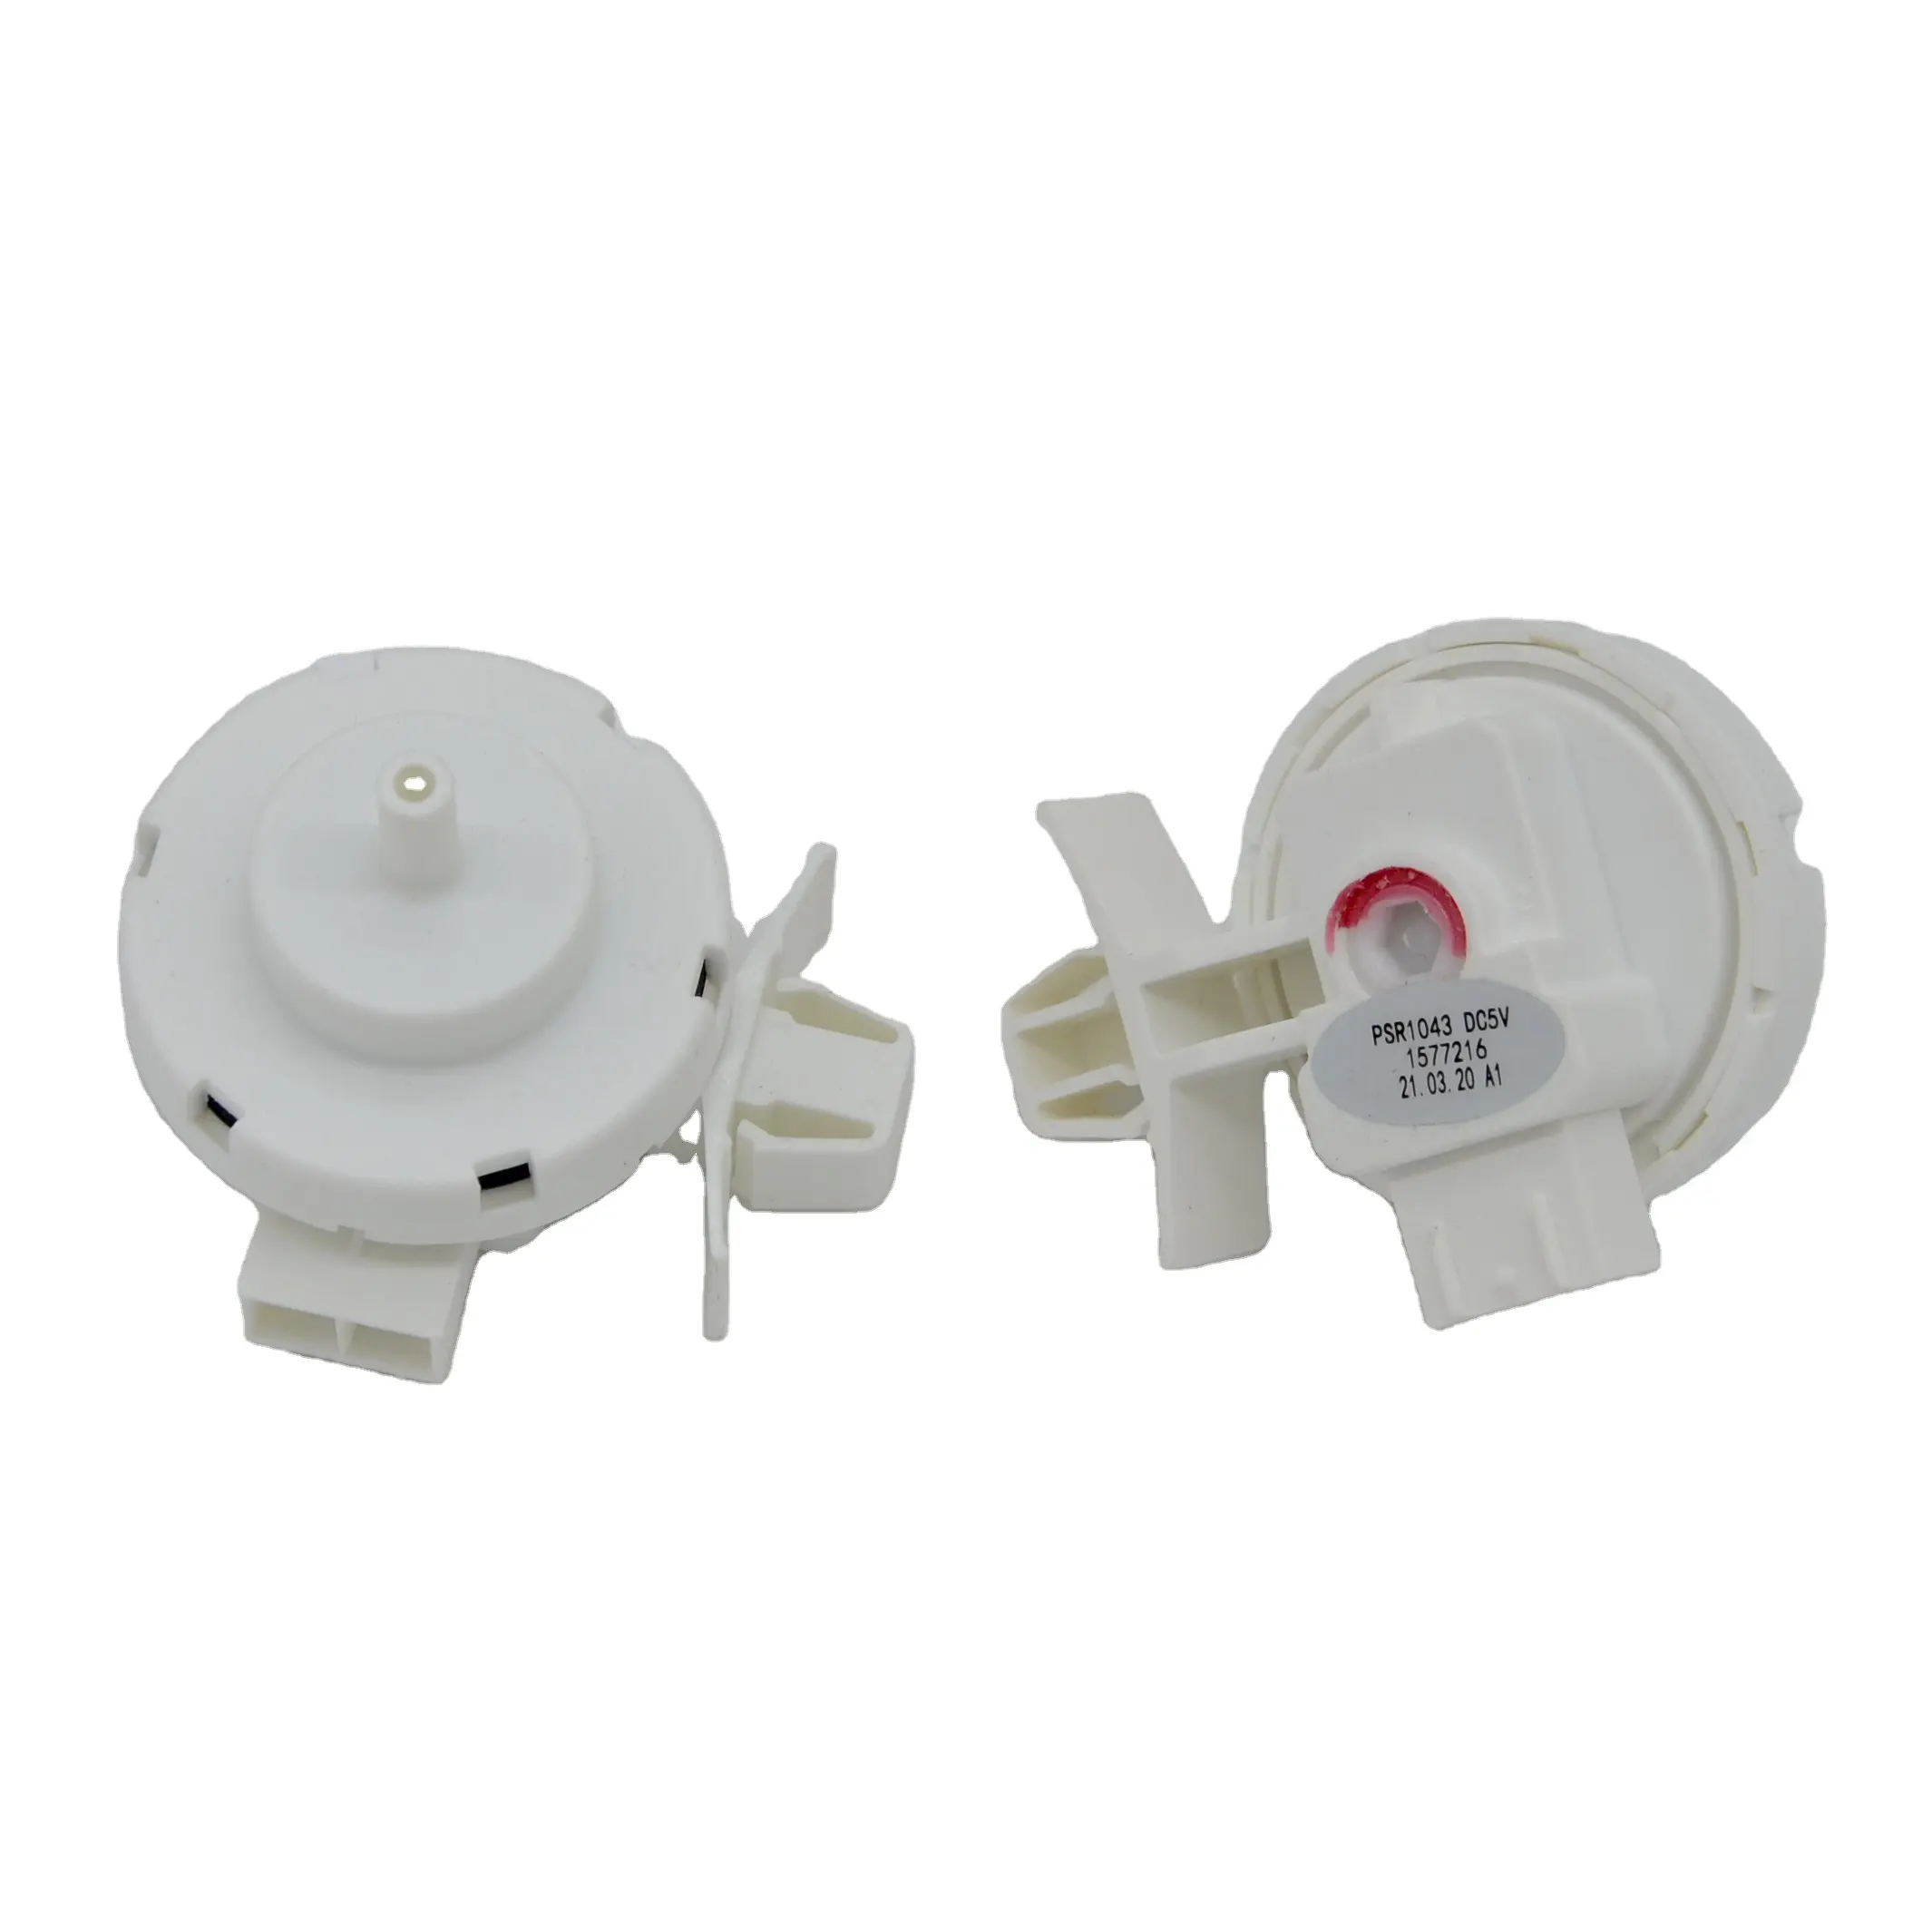 Interruptor de pressão para midea tcl, peças e utensílios, máquina de lavar roupa para uso doméstico psr1043 wps82118